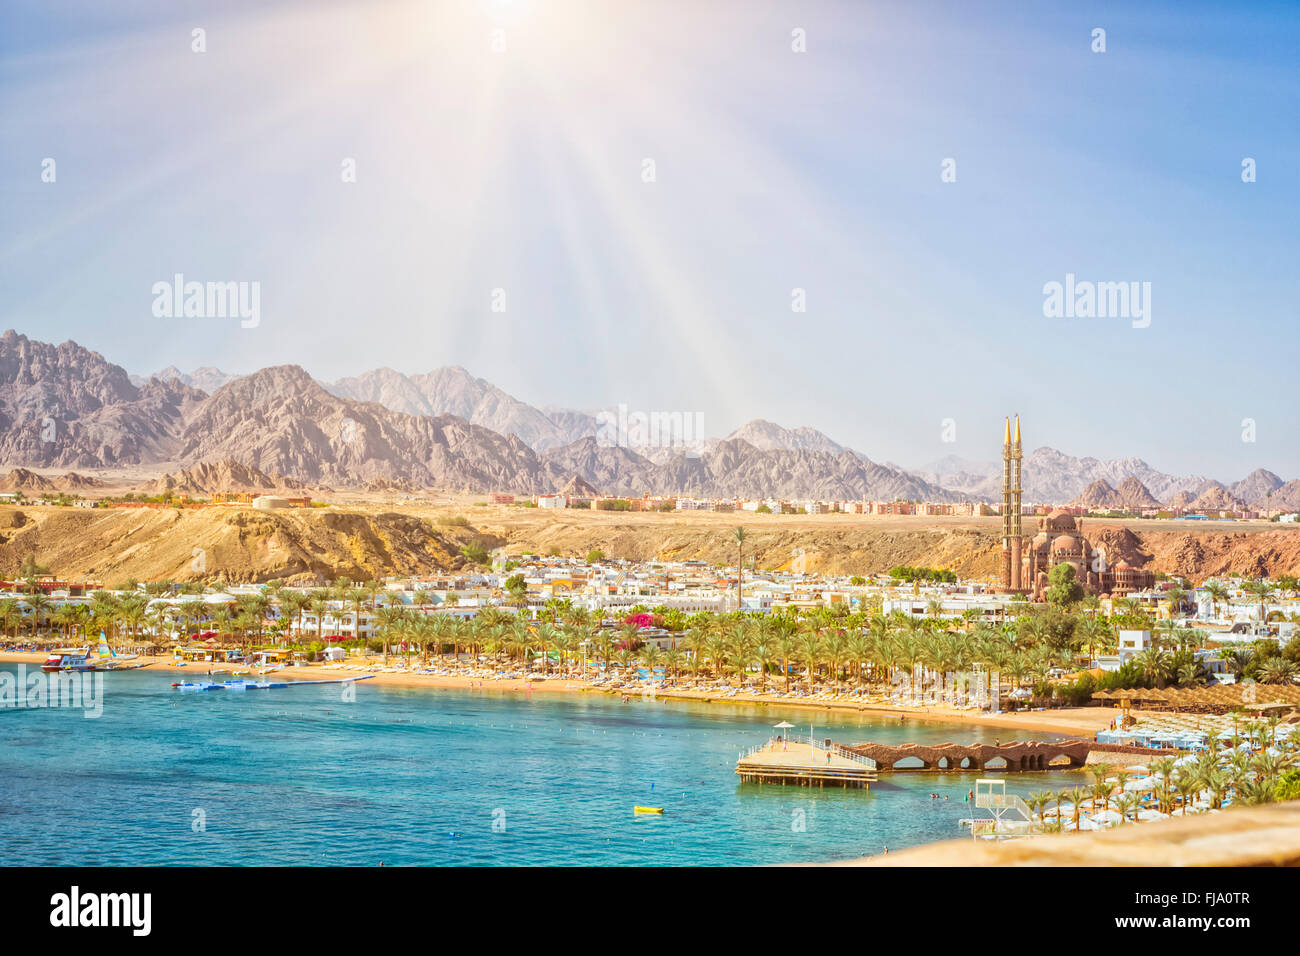 Febbraio giornata sulla spiaggia di Sharm el-Sheikh, la costa del mar rosso dall'altezza dell'hotel beach Albatros resort, Egitto Foto Stock